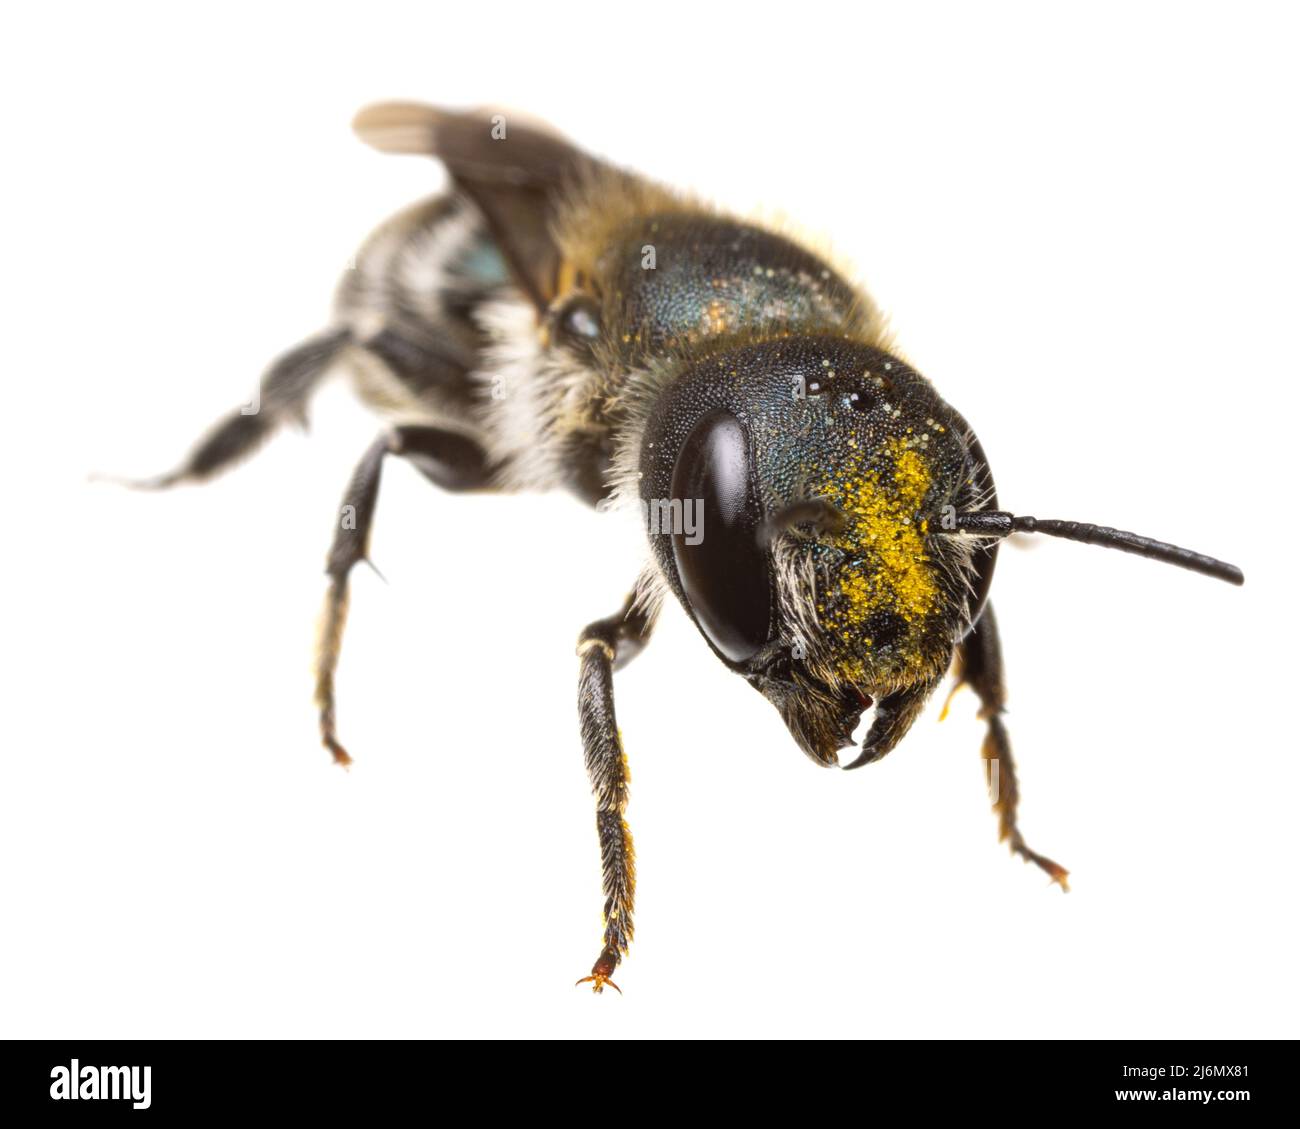 Insekten Europas - Bienen: Vorderansicht - Kopf mit Pollen der weiblichen Osmia caerulescens-Blaumauerbiene, isoliert auf Weiß Stockfoto